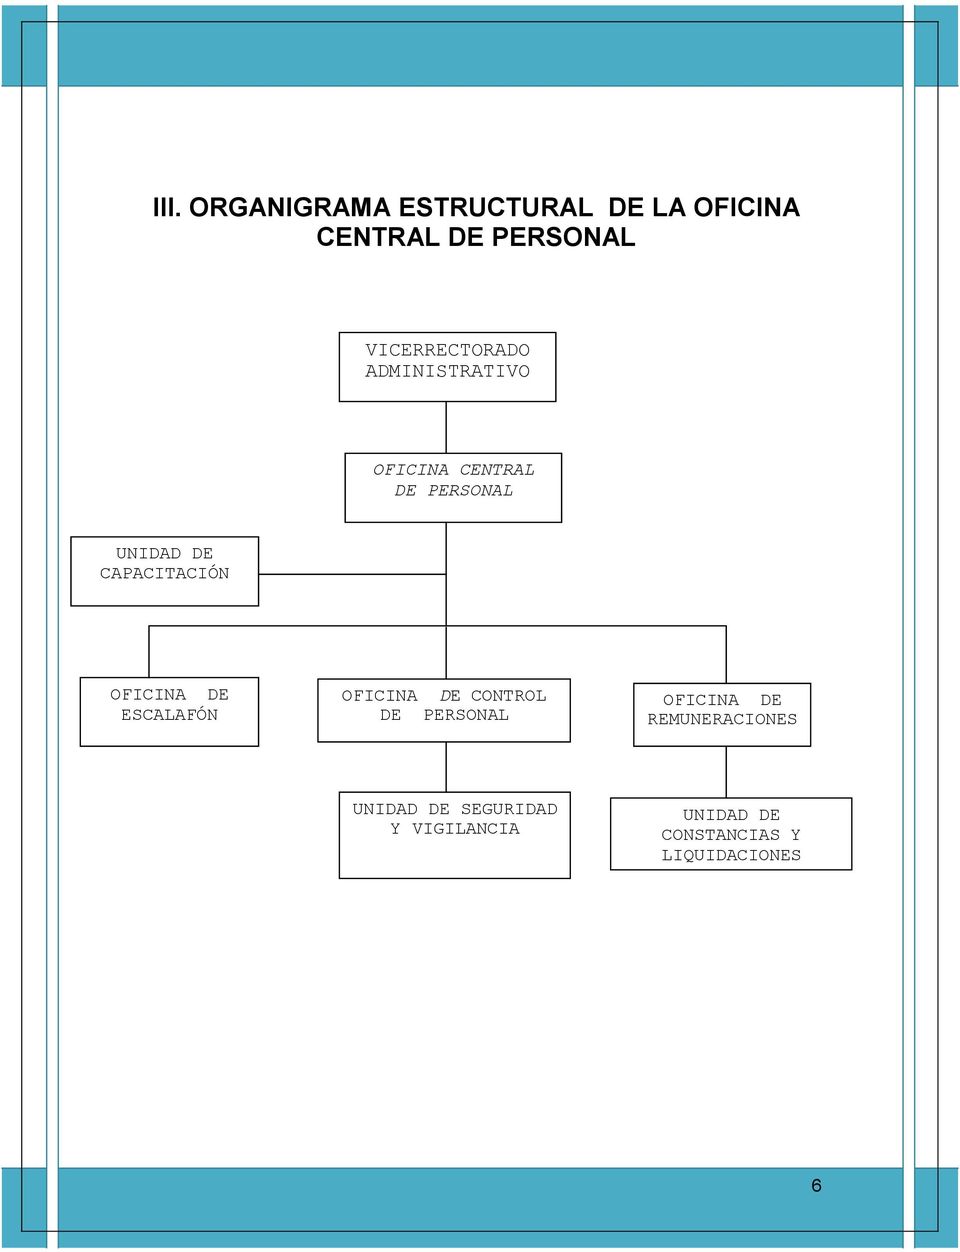 CAPACITACIÓN OFICINA DE ESCALAFÓN OFICINA DE CONTROL DE PERSONAL OFICINA